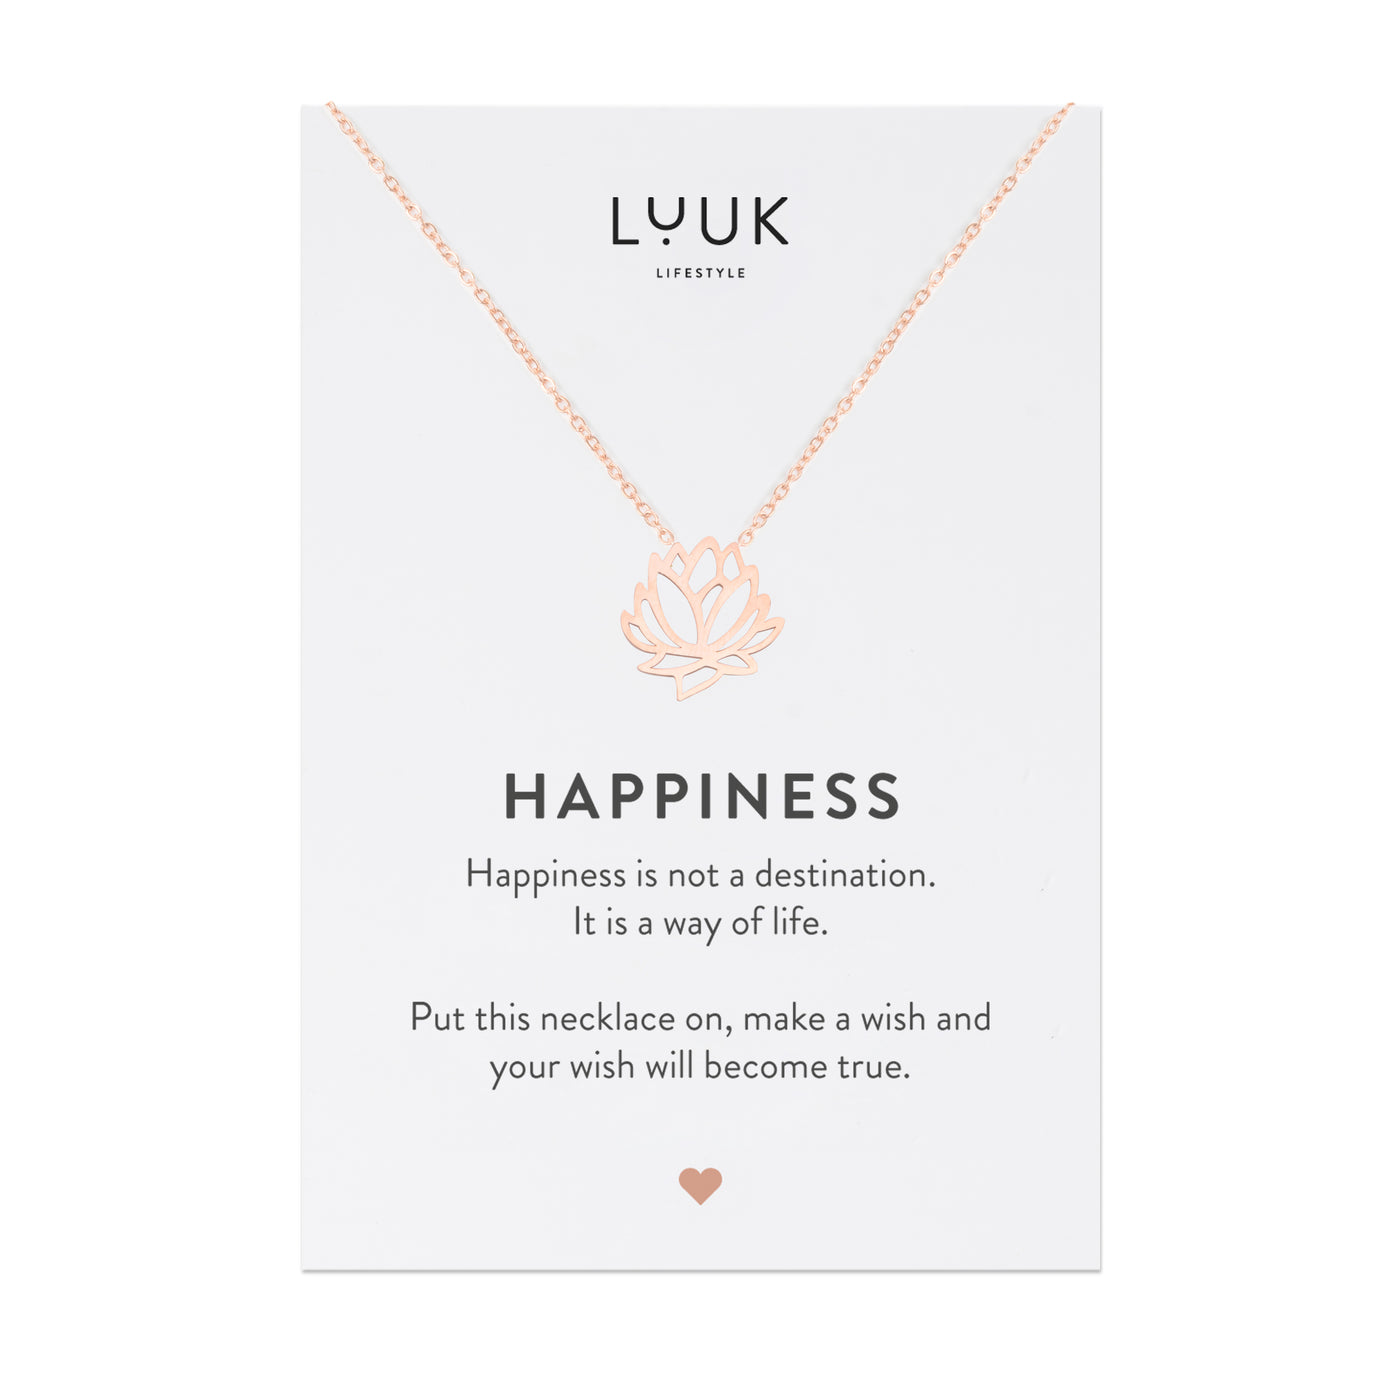 Halskette mit Lotusblüten Anhänger in Rosegold auf Happiness Spruchkarte von Luuk Lifestyle 